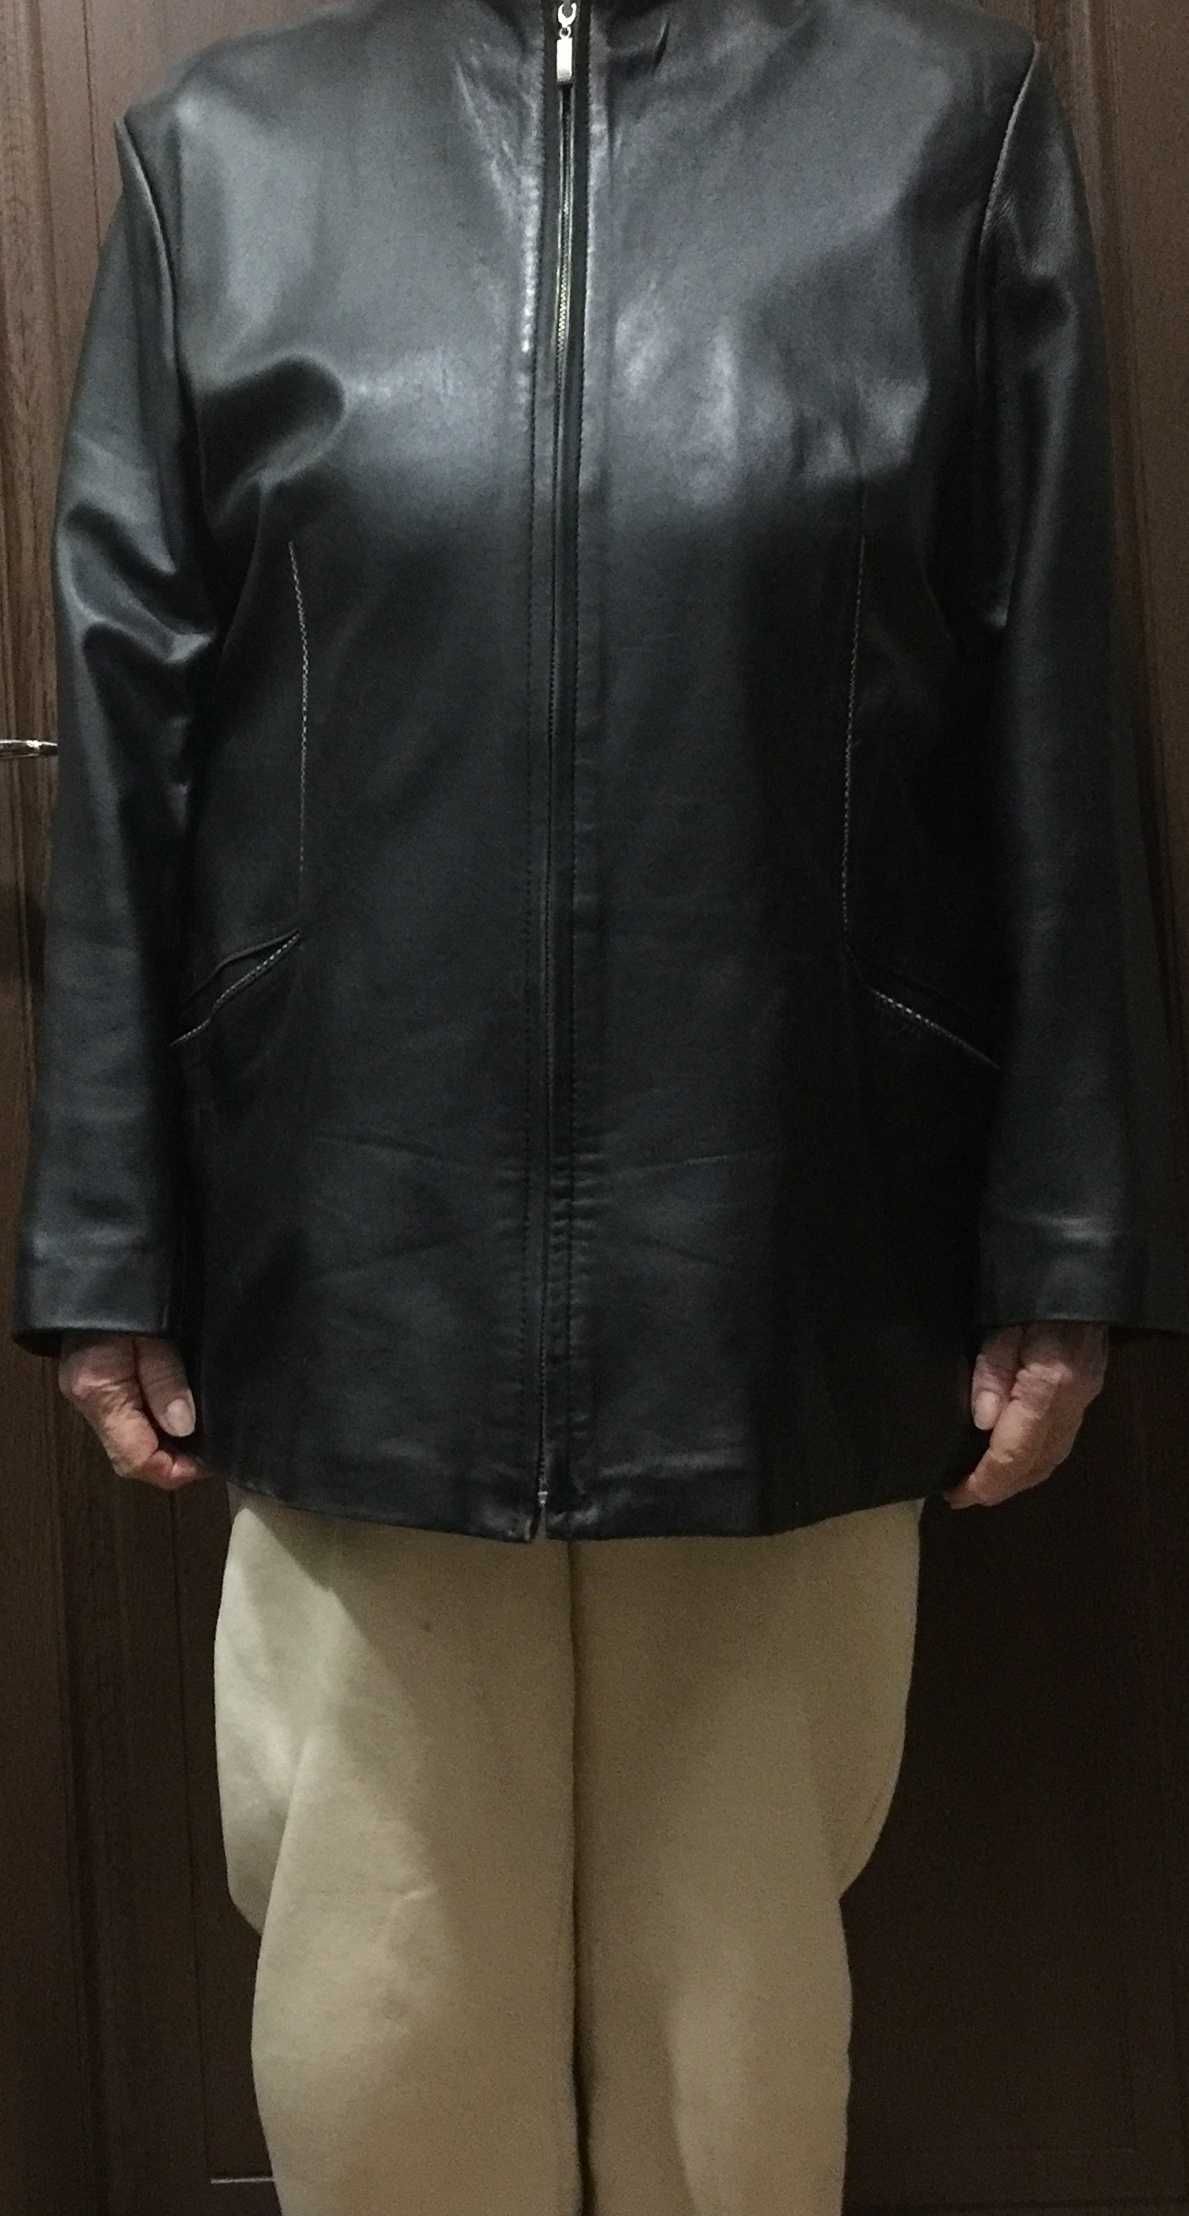 Кожаная куртка  большого размера Турция  б/у в отличном состоянии